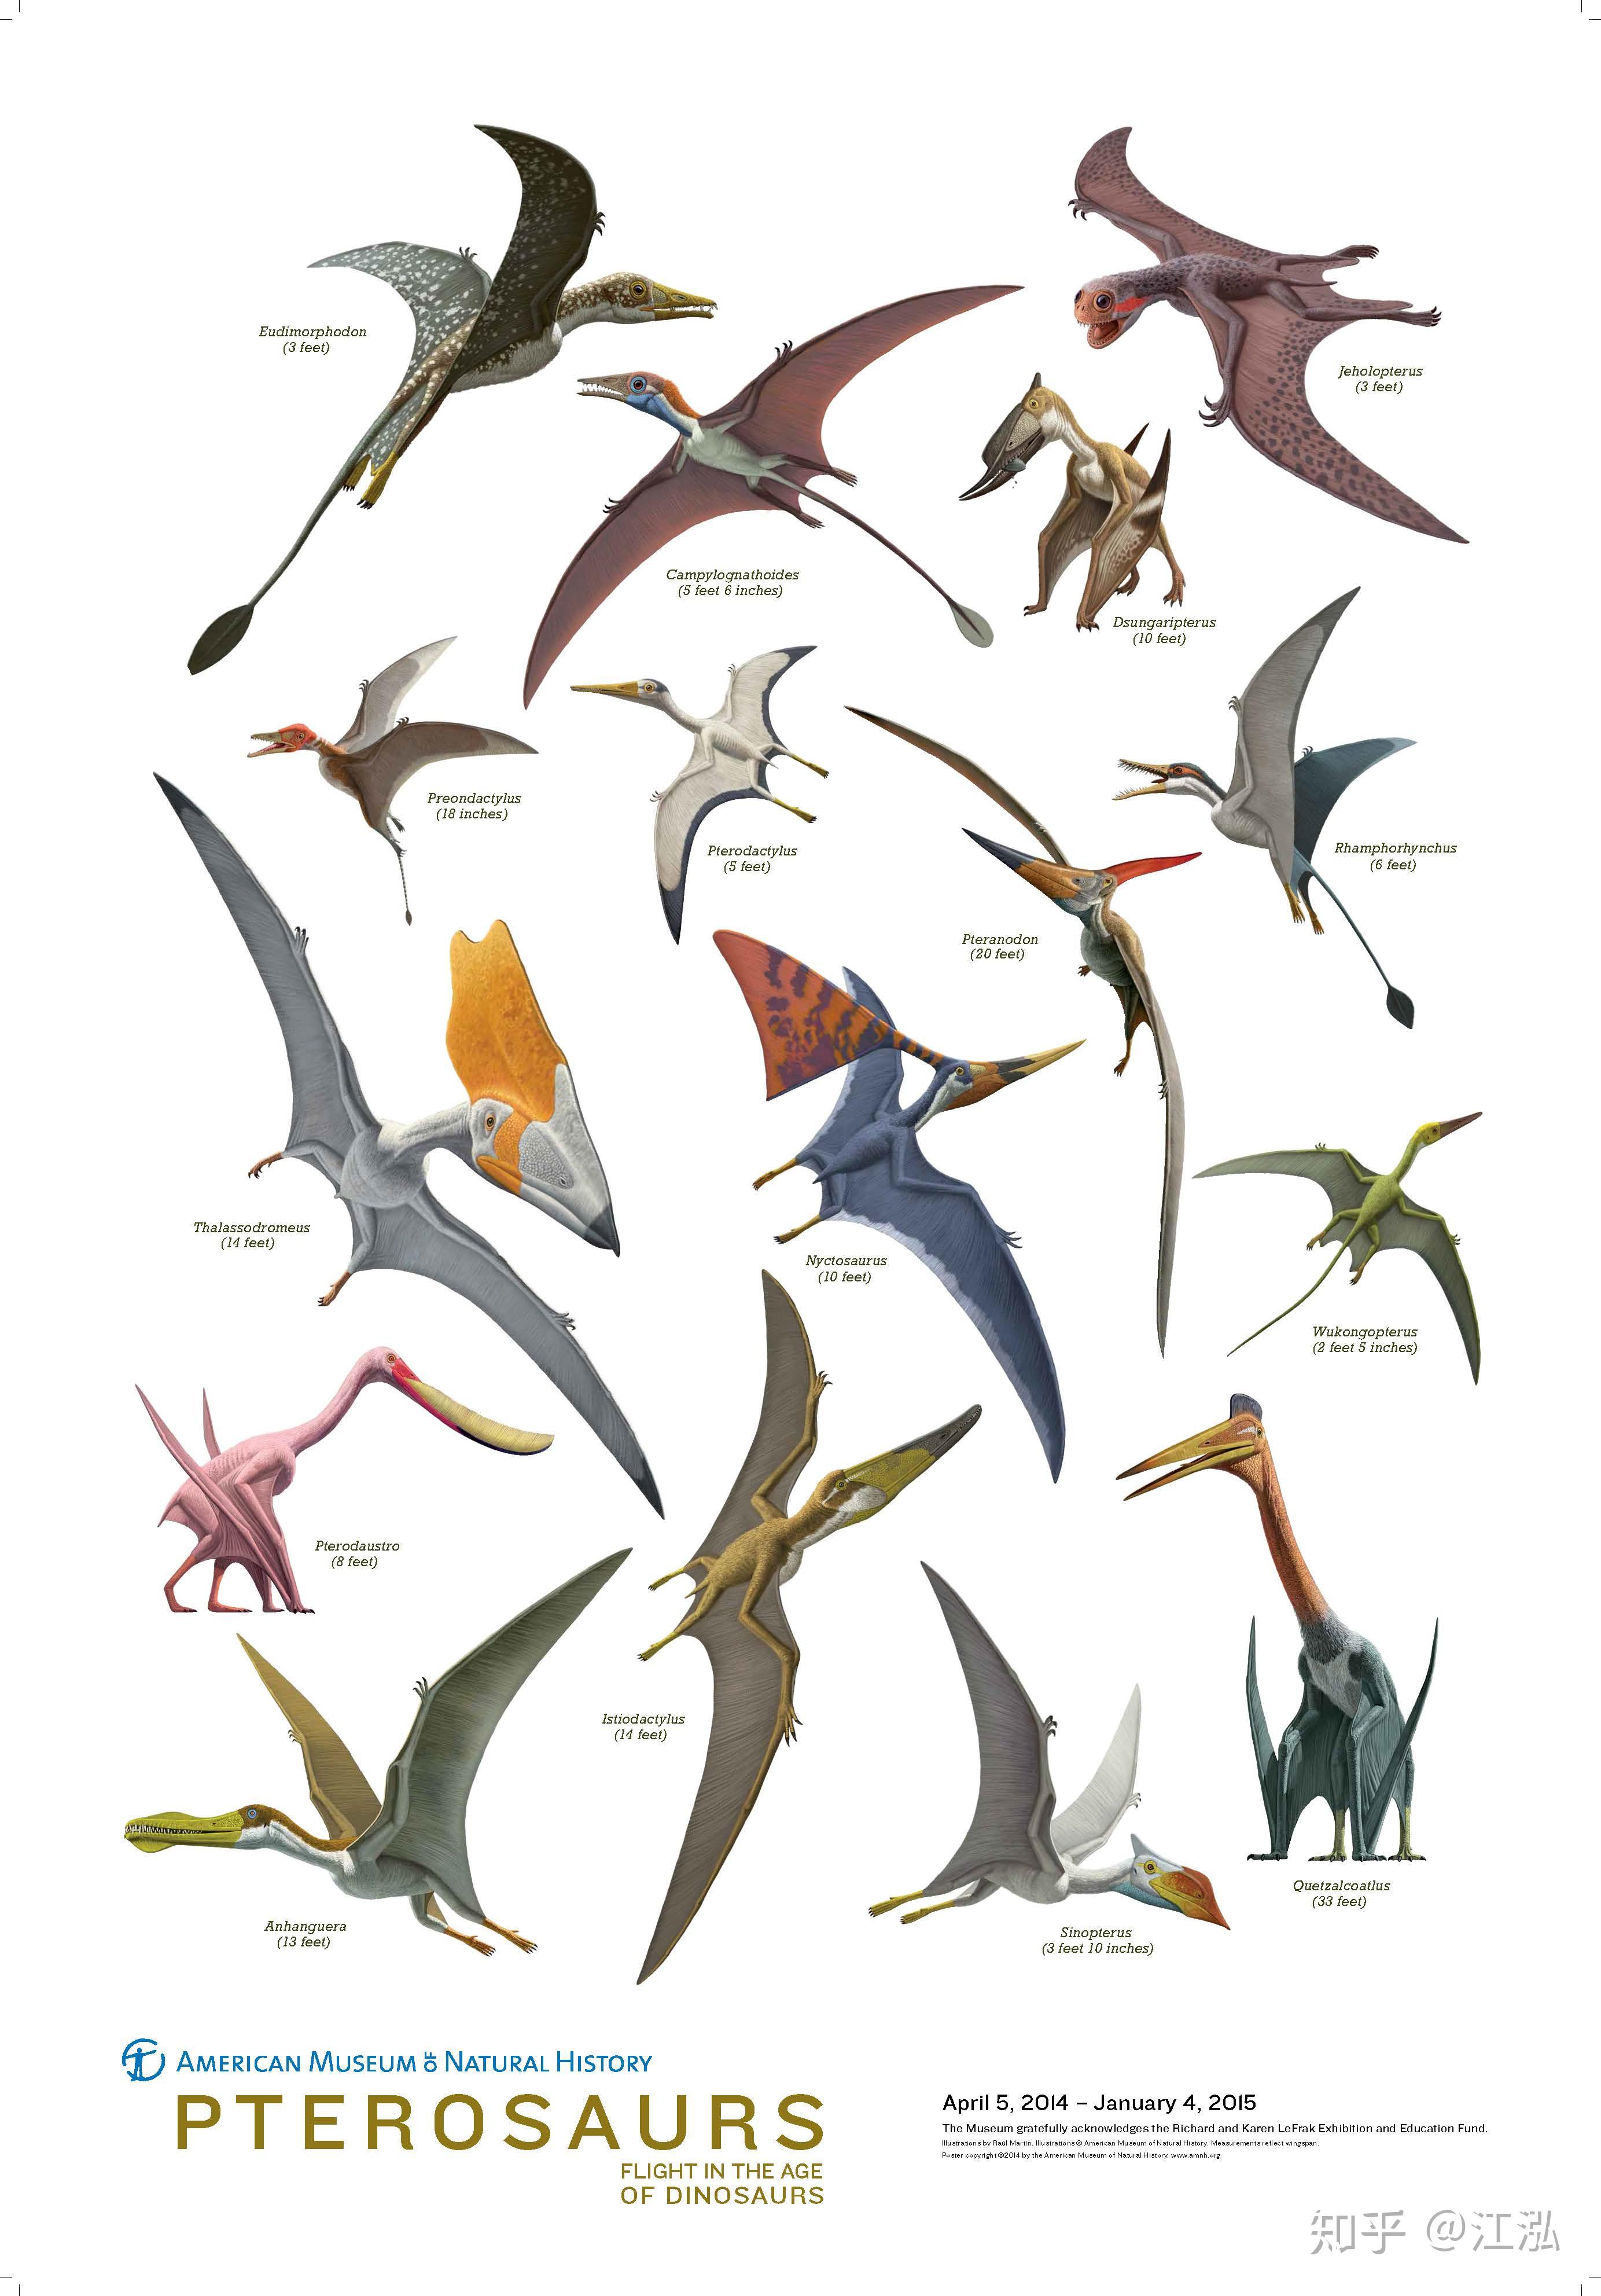 翼龙的多样性丰富吗有没有和猛禽相似专门捕食小恐龙或其它翼龙鸟类的